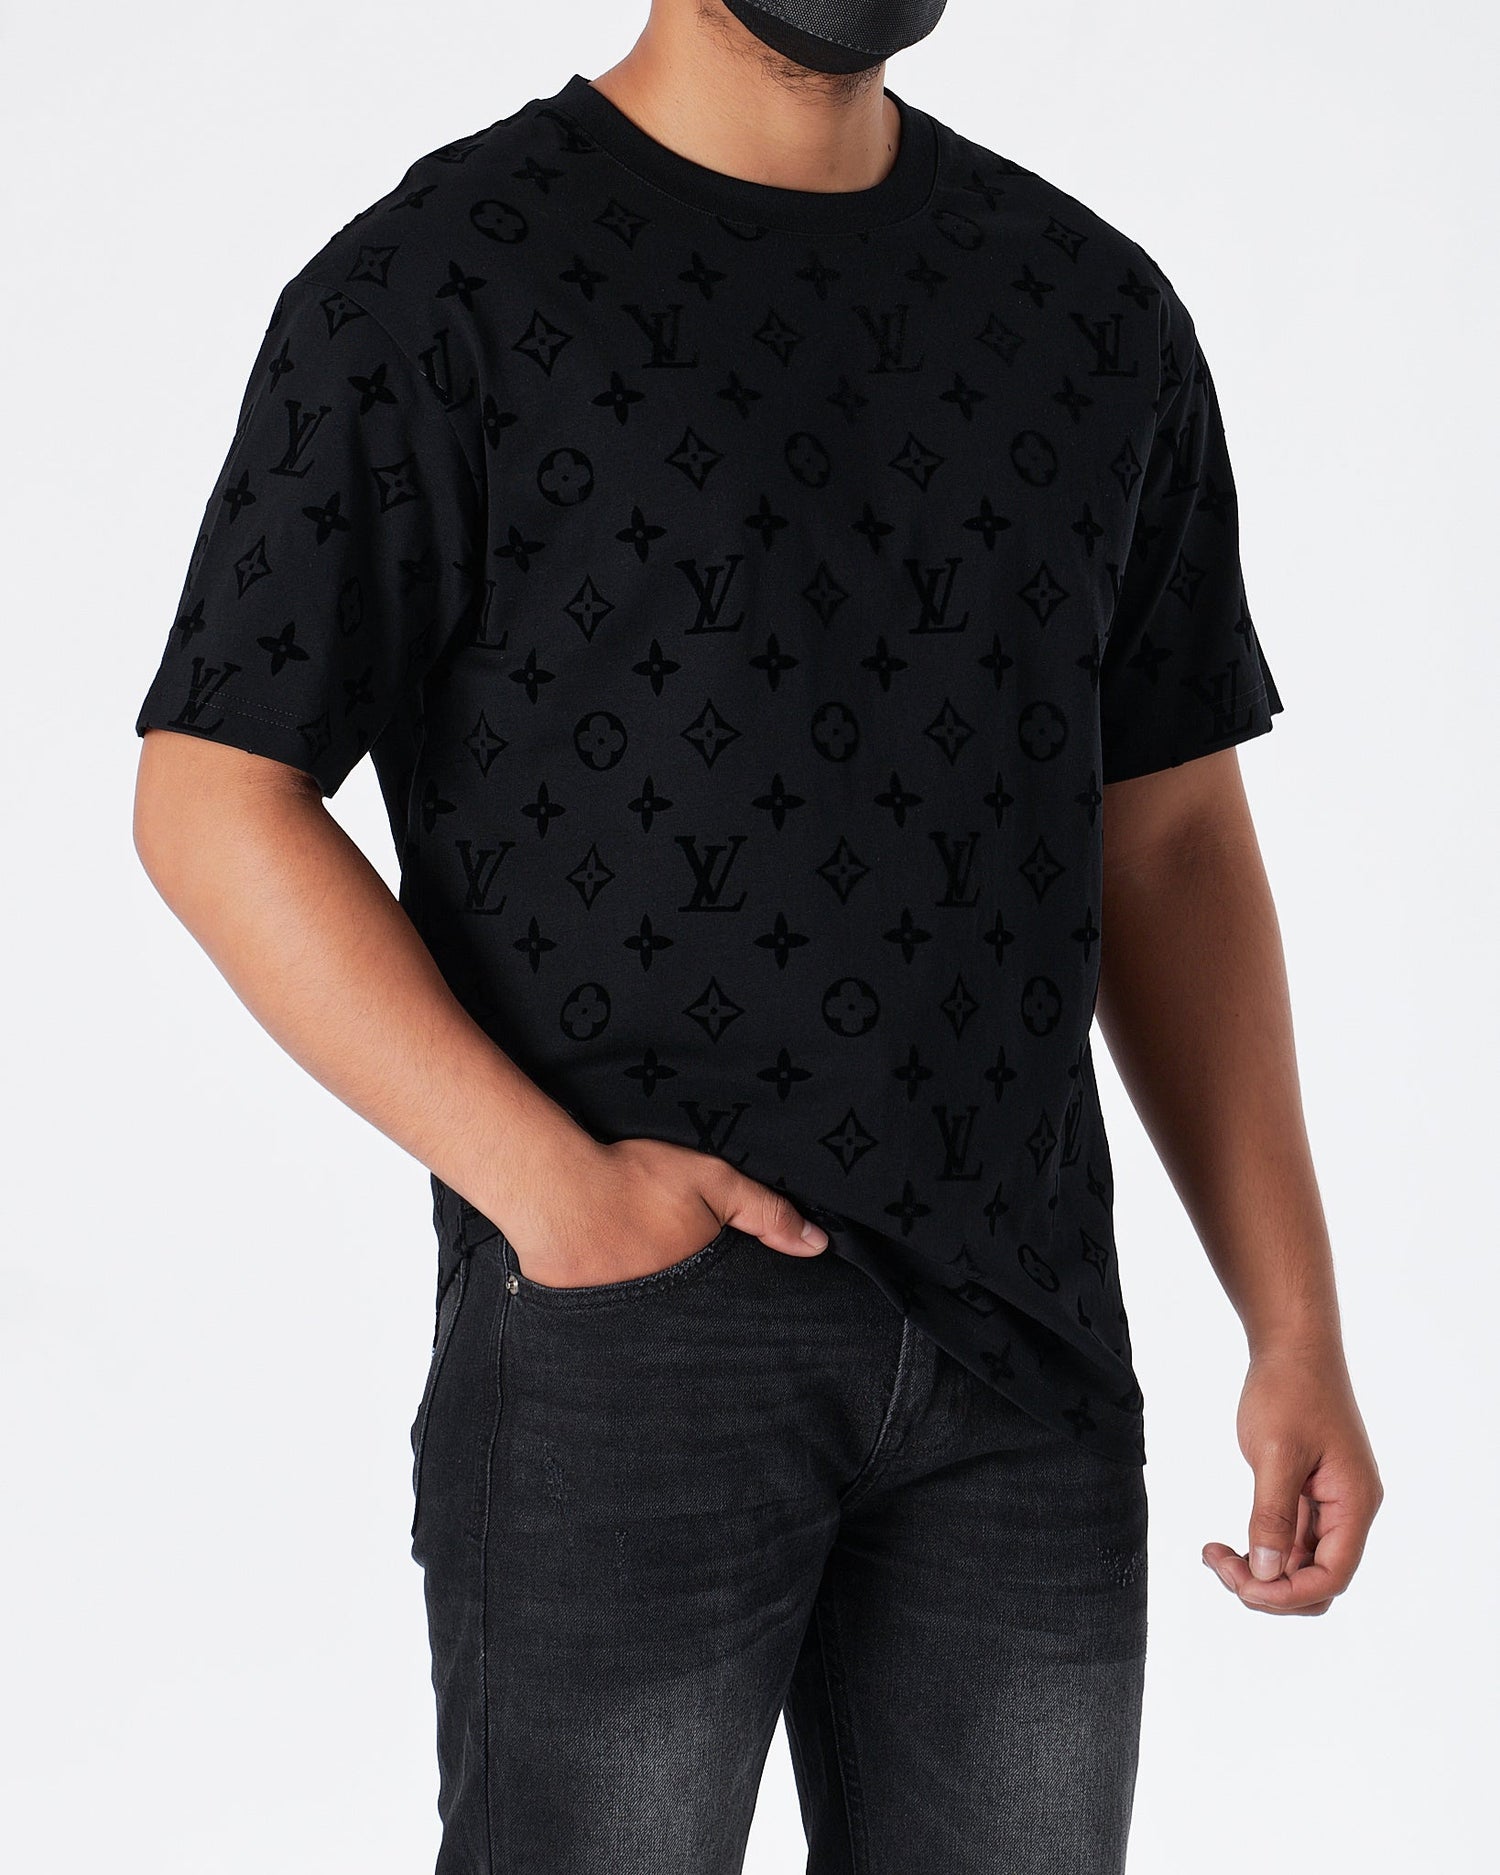 MOI OUTFIT-LV Monogram Velvet Men T-Shirt 54.90